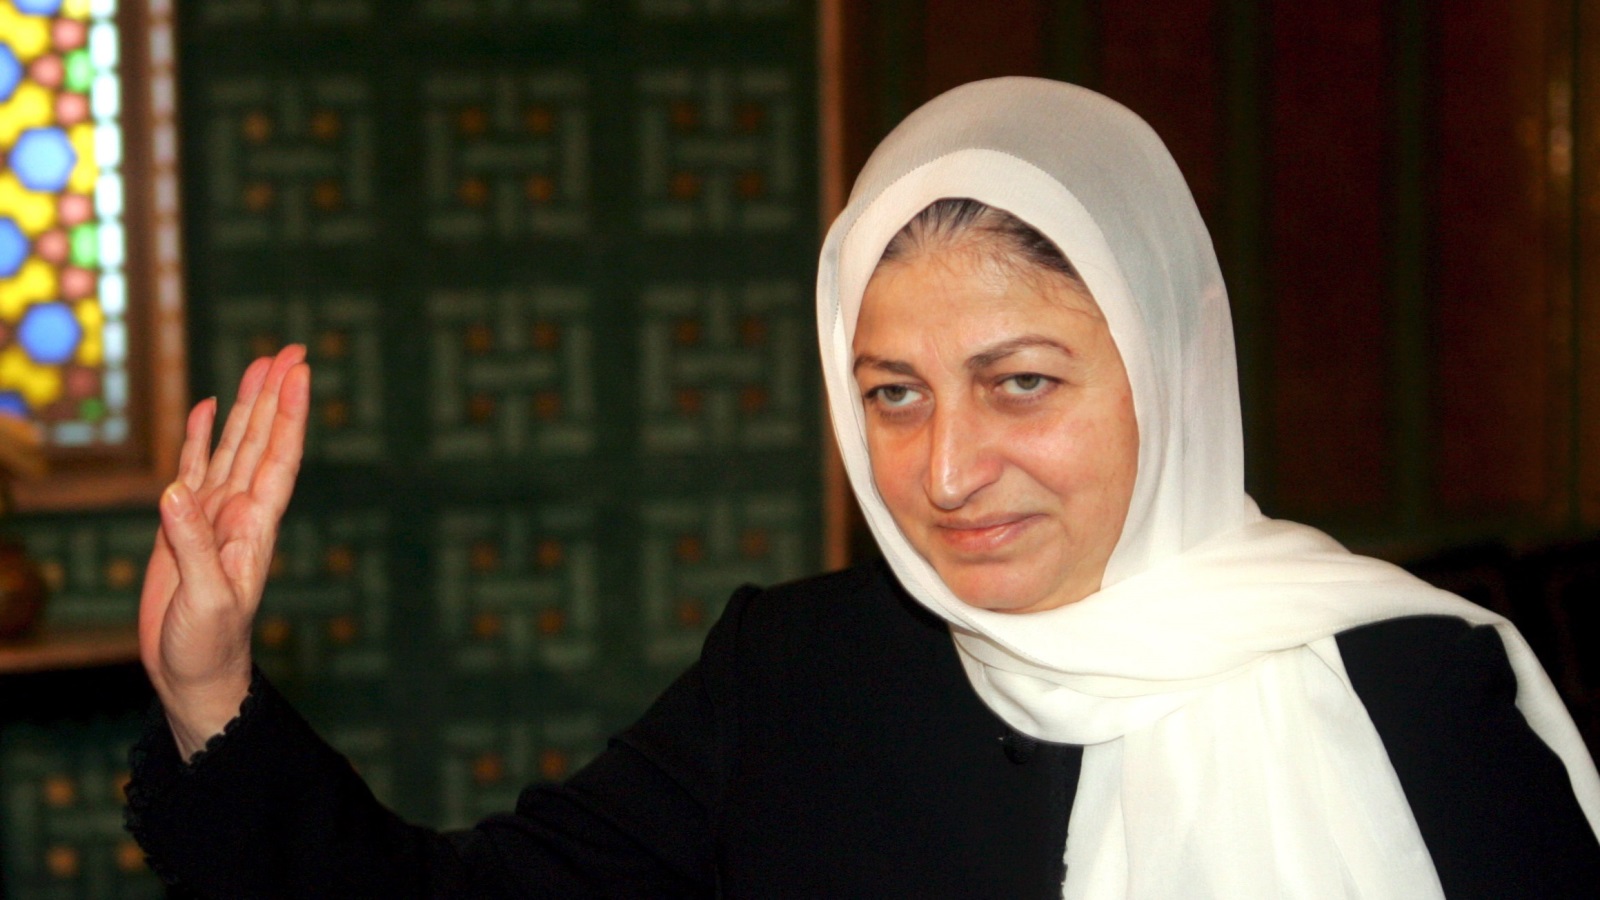 بهية الحريري نائبة في البرلمان منذ أول انتخابات بعد الحرب الأهلية عام 1992 (الأوروبية-أرشيف)